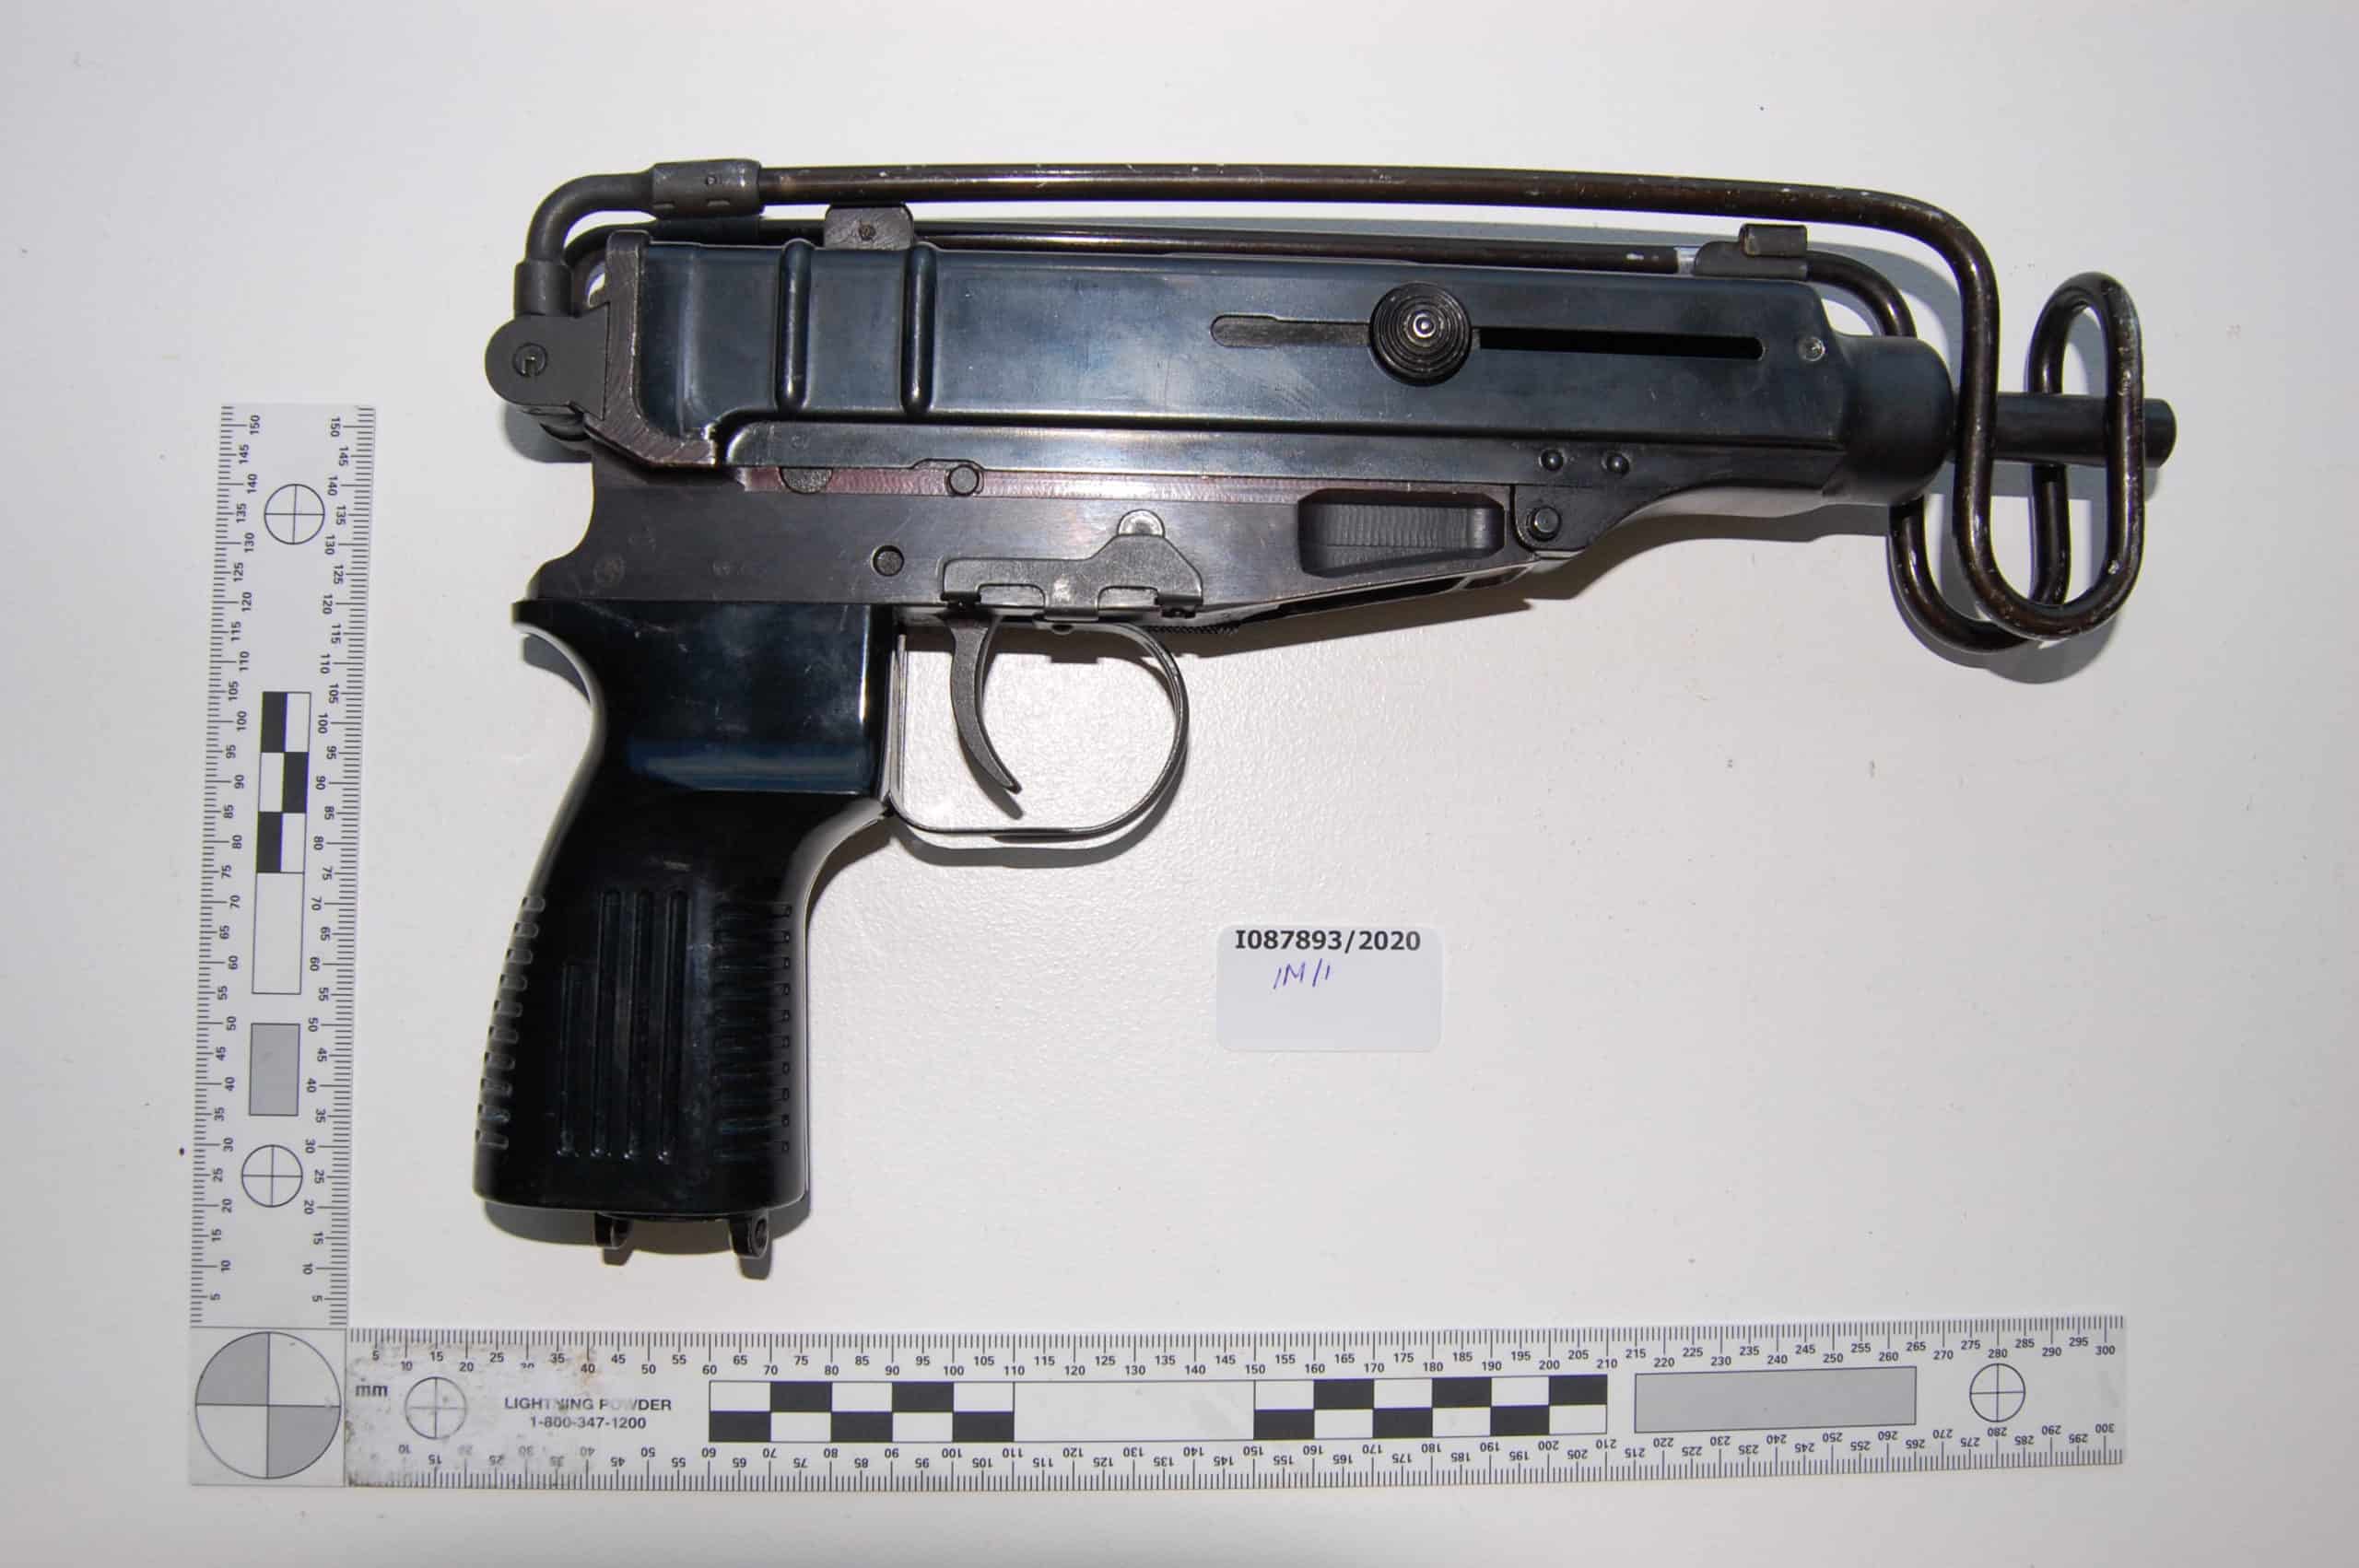 A Skorpion machine gun seized by police this year